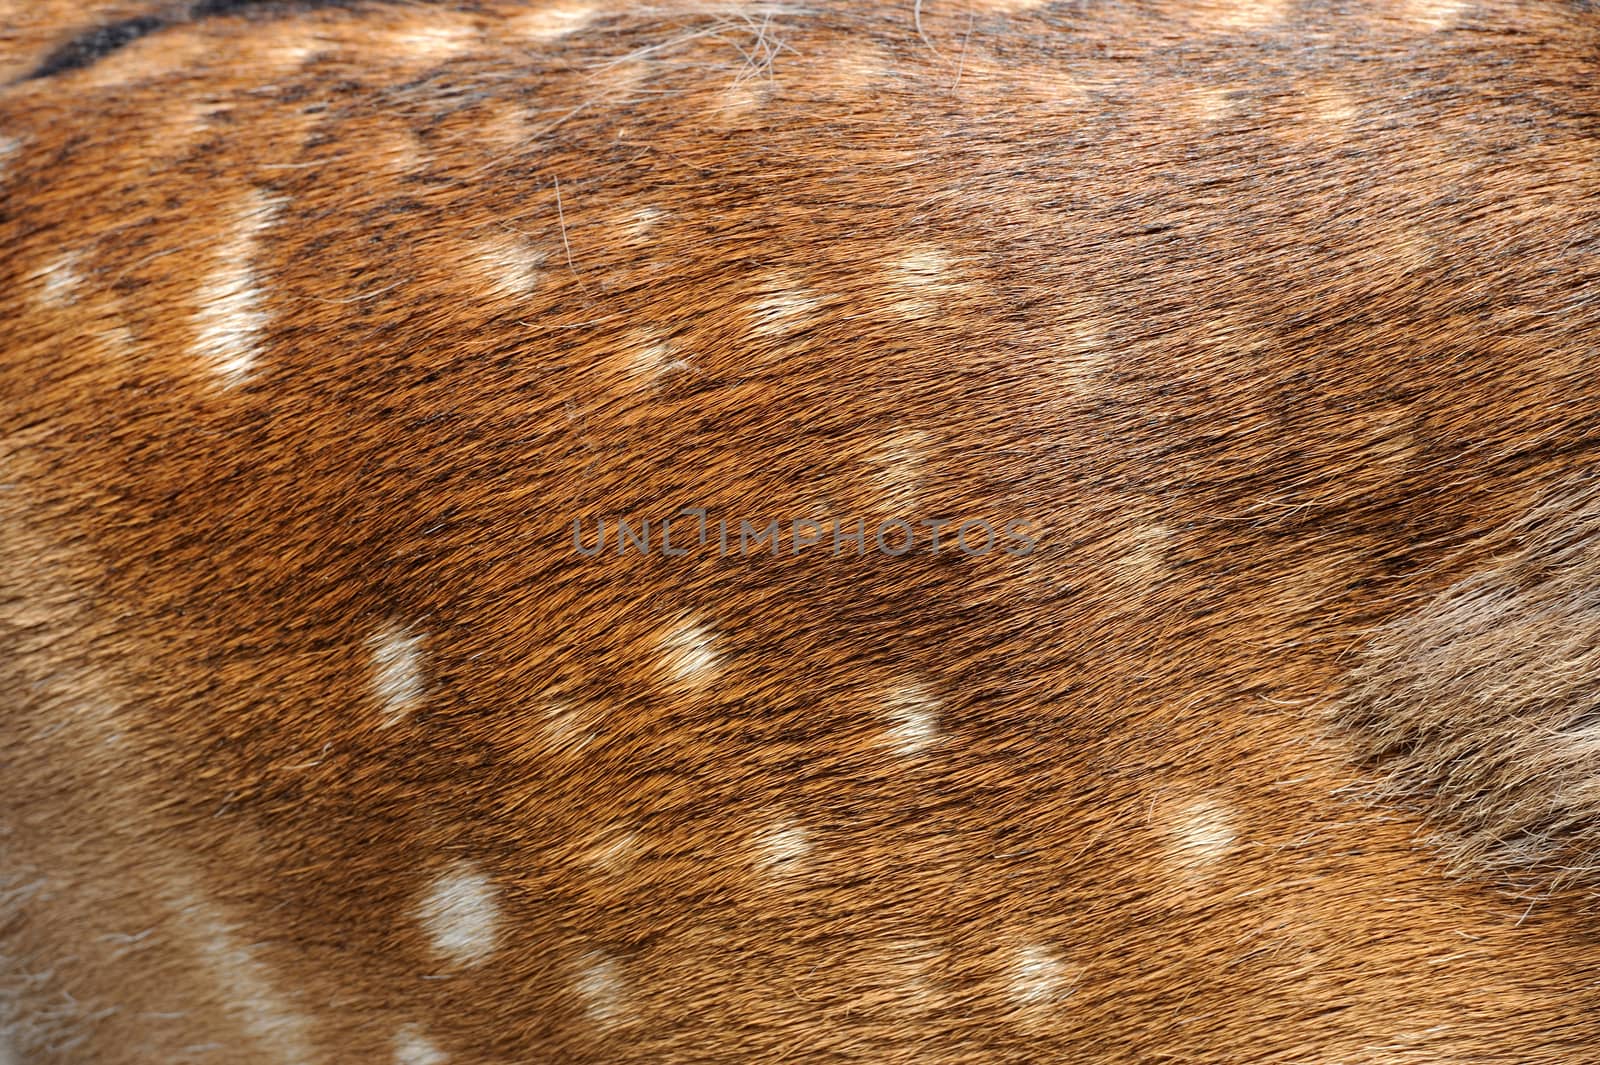 Texture deer fur by byrdyak